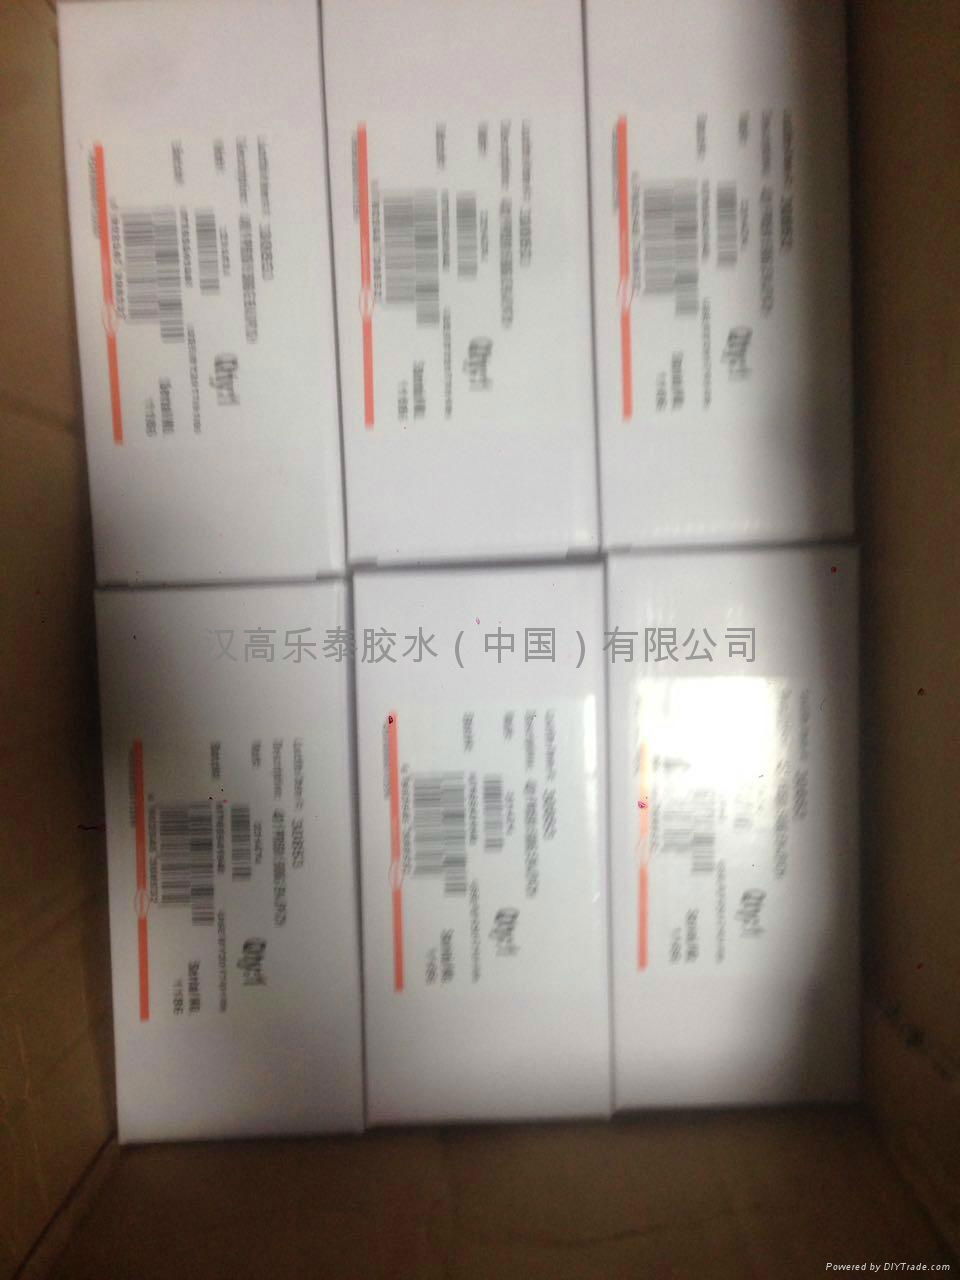 Loctite 401 glue loctite henkel loctite 401 glue in China